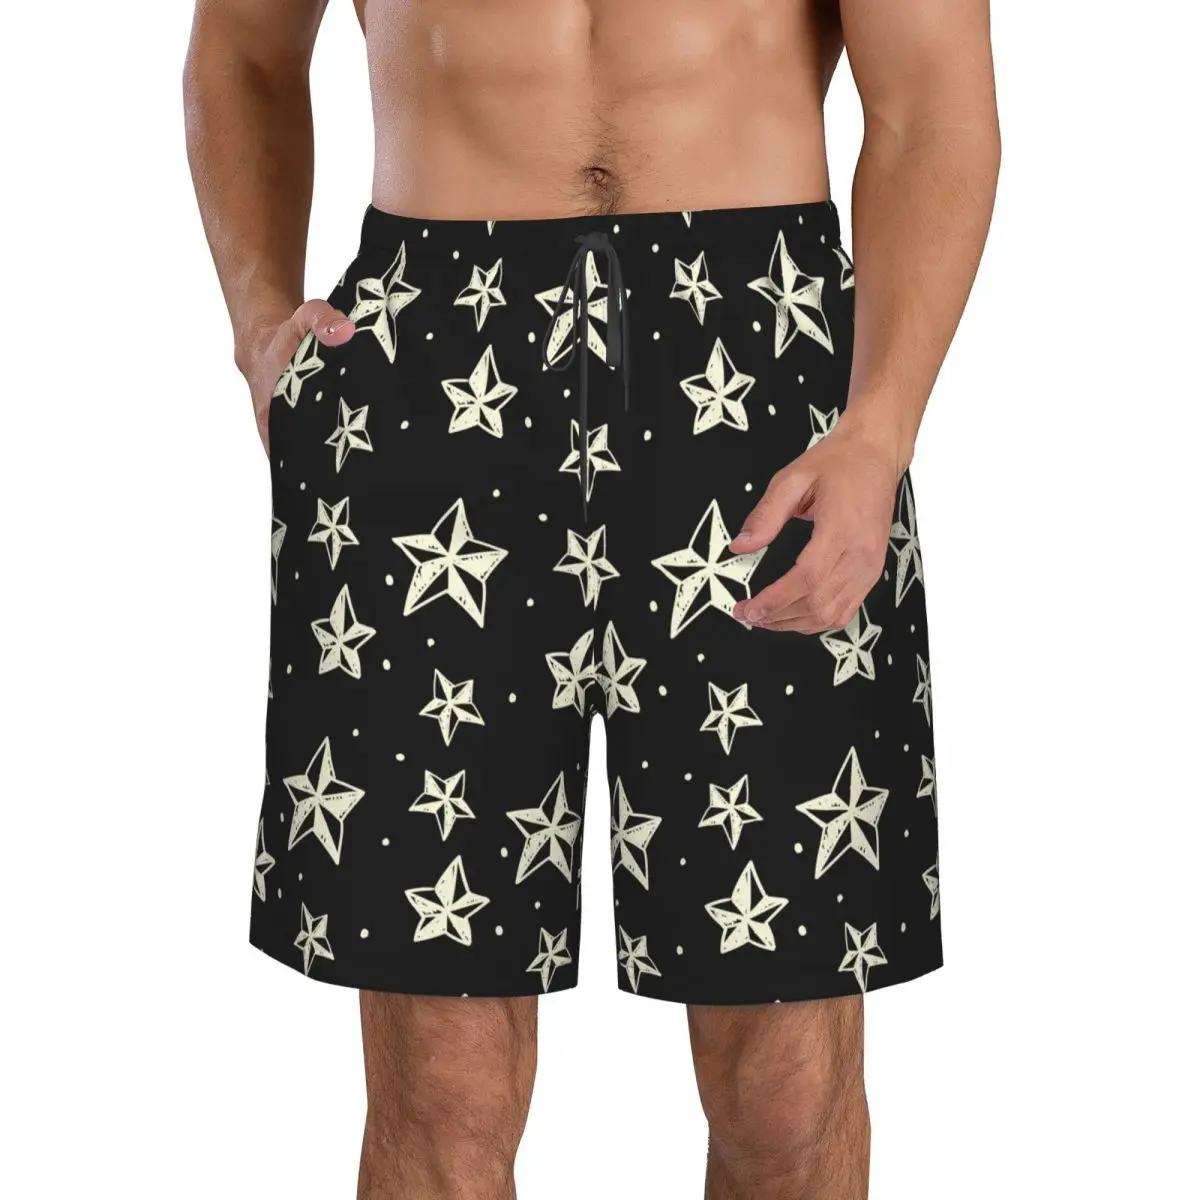 Купальники Мужские плавательные шорты Пляжные плавки для мужчин Геометрические звезды Купальник Доска для серфинга Купальный костюм